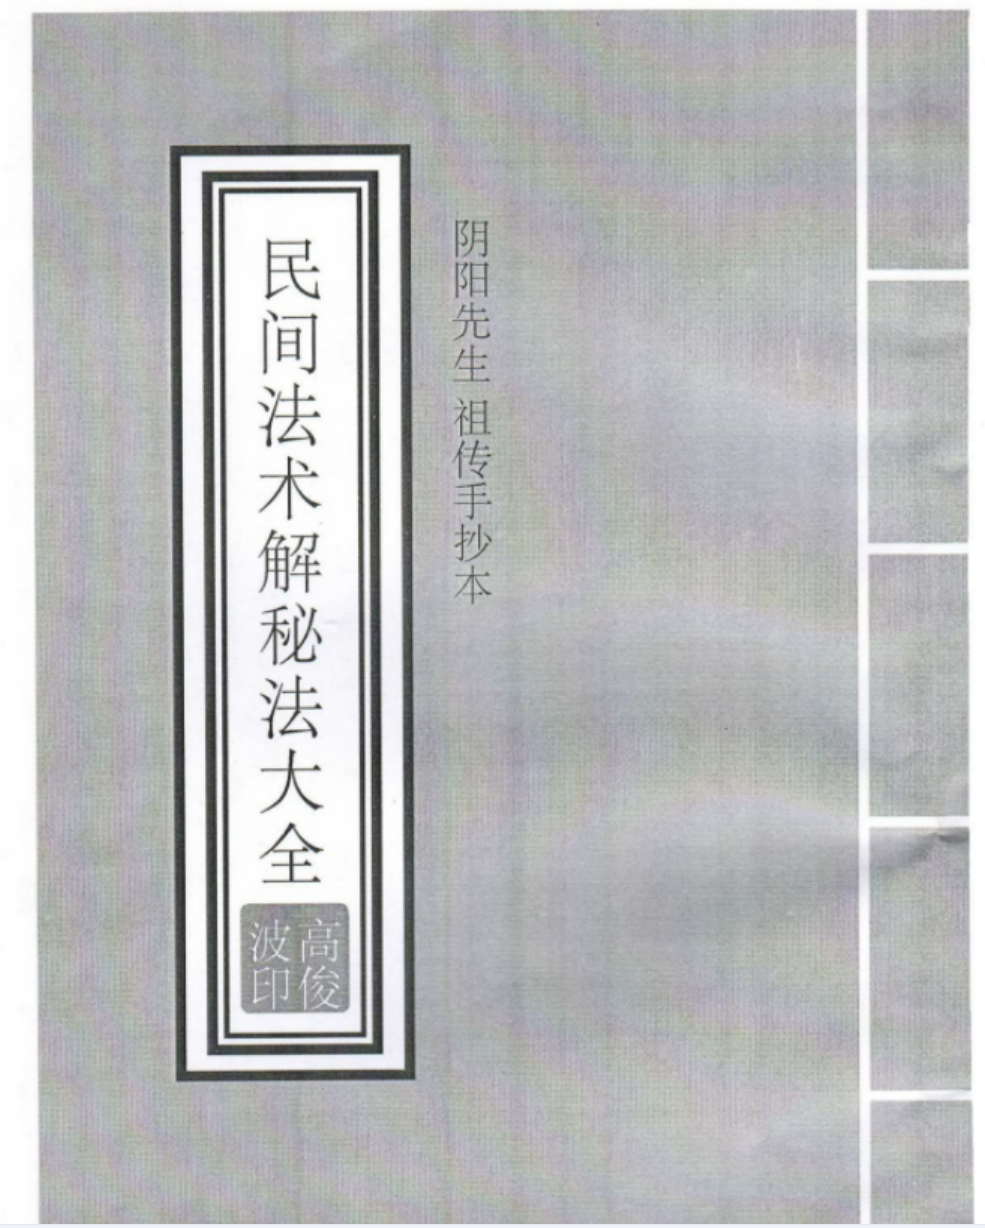 高俊波-民间法术破解秘法9集+讲义(图4)